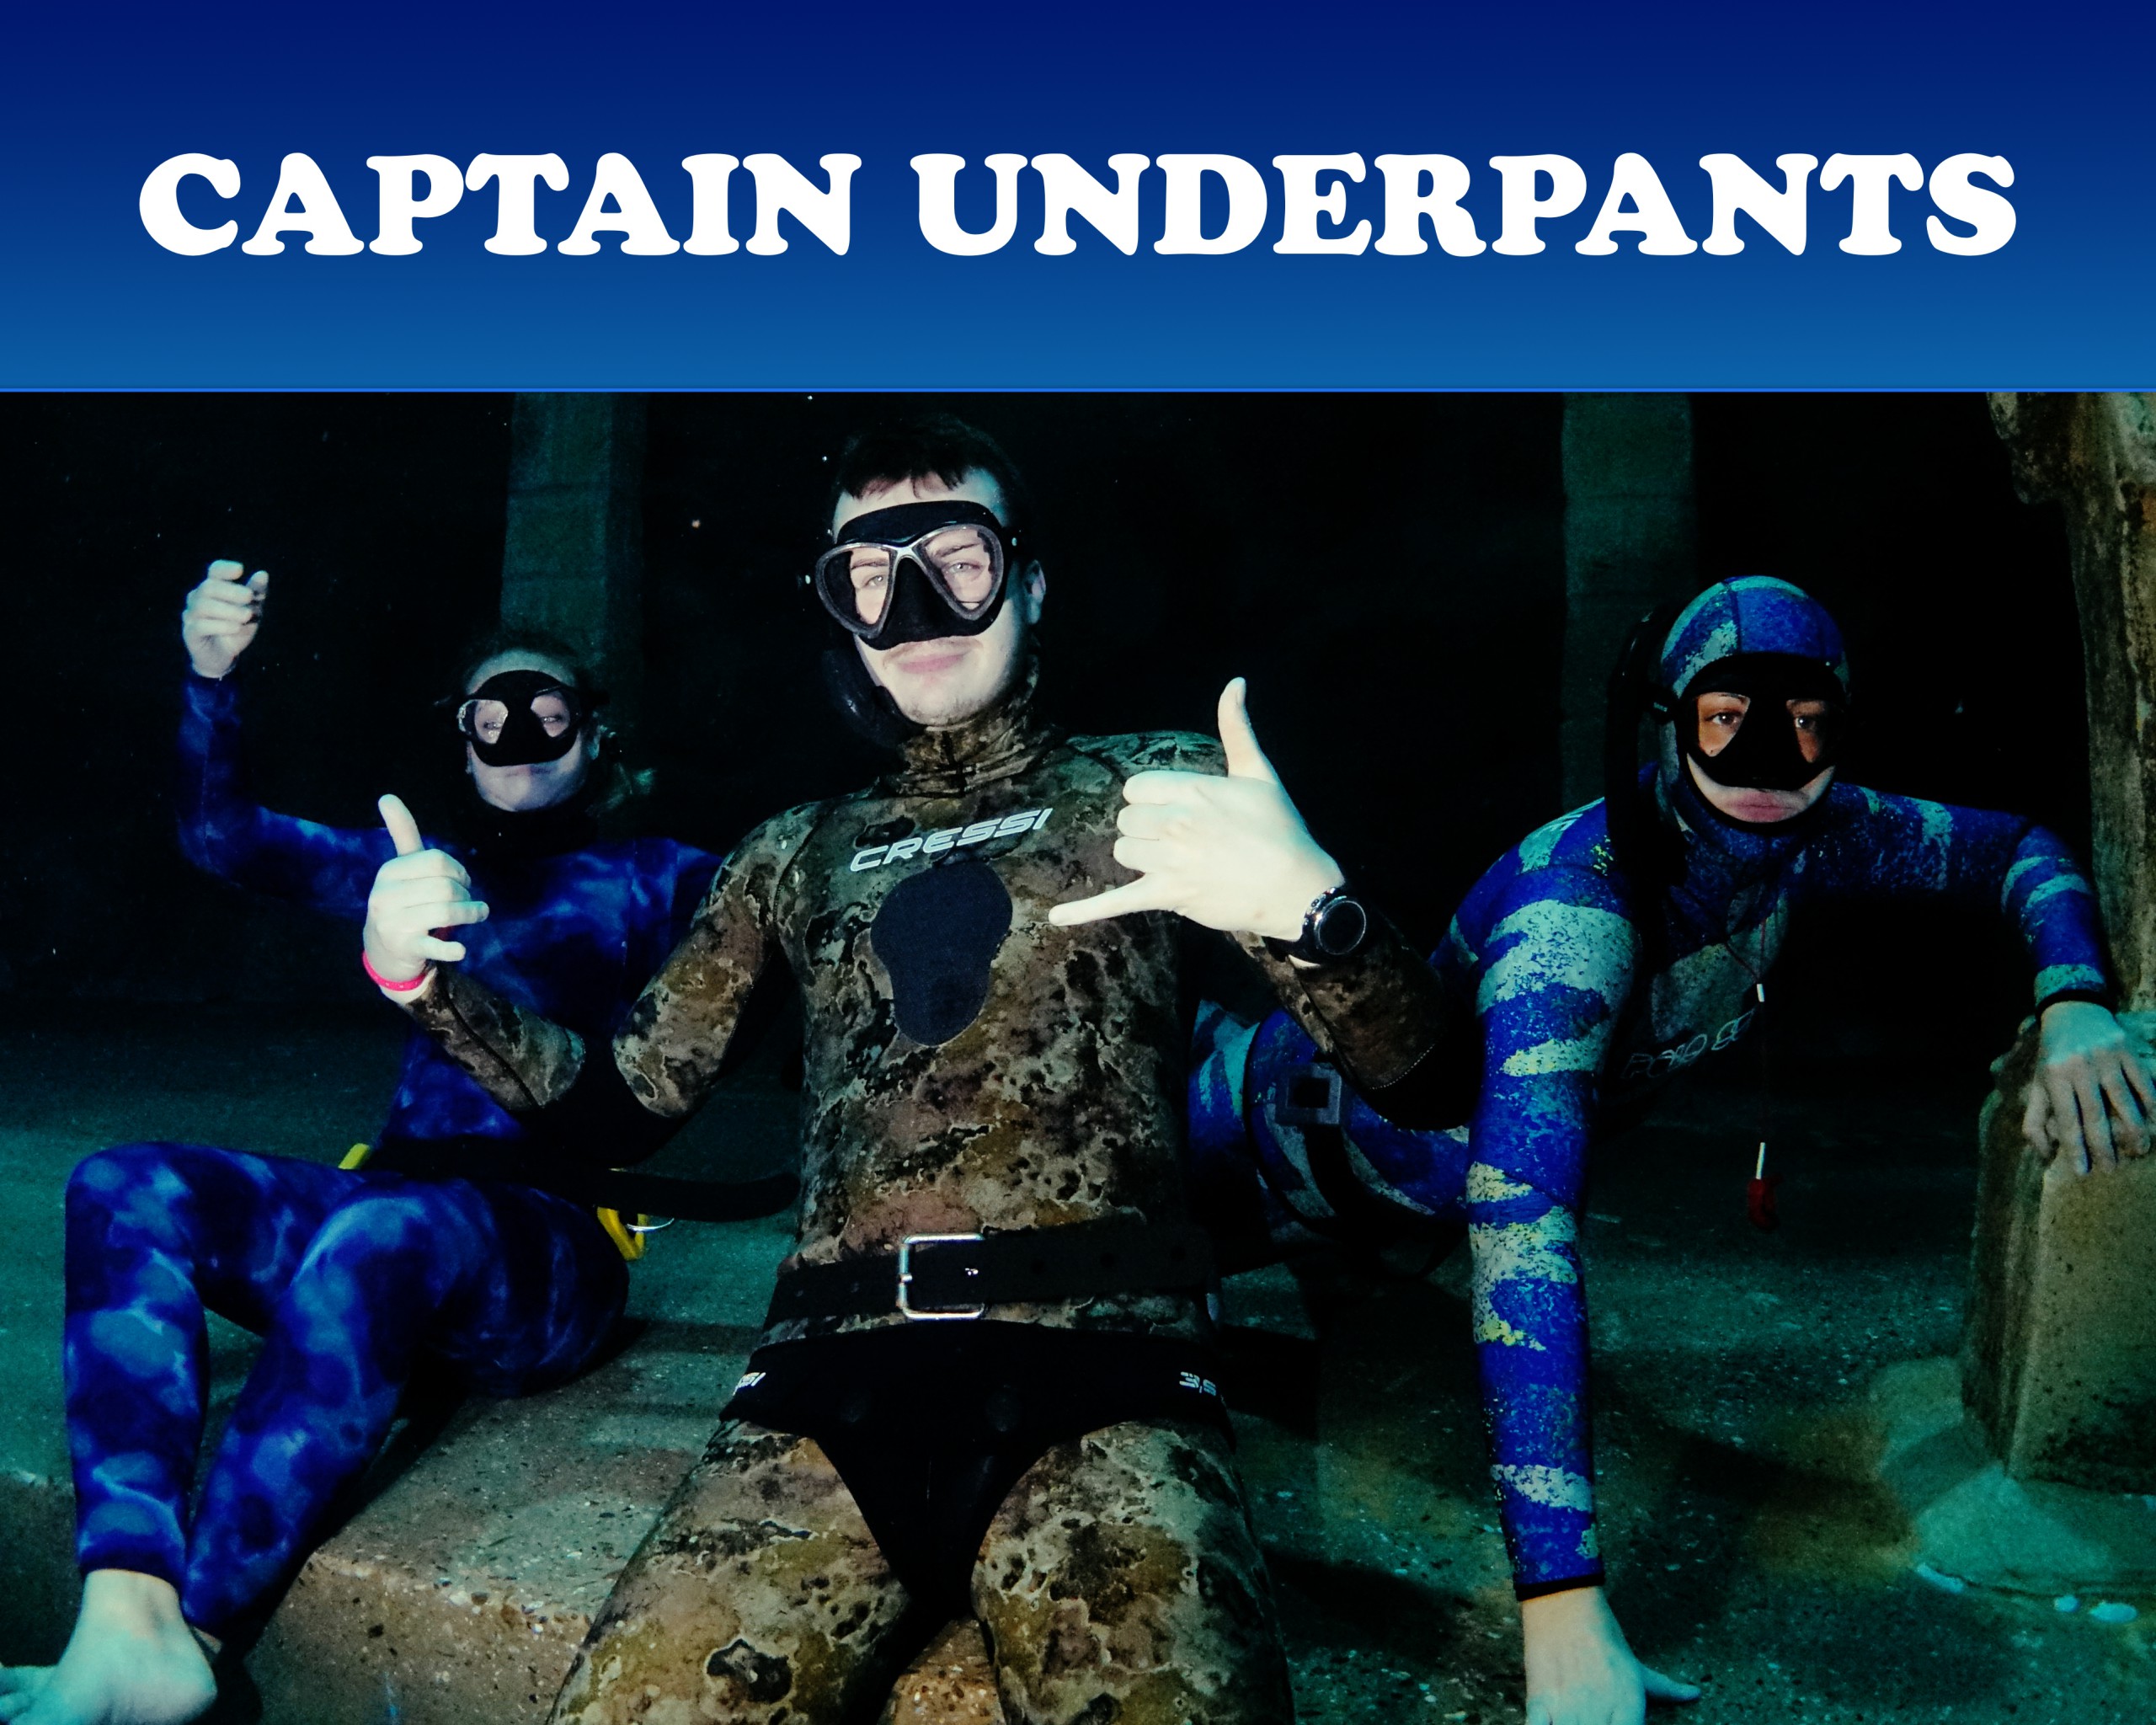 Scubamarine Marvel Team Captain Underpants privat